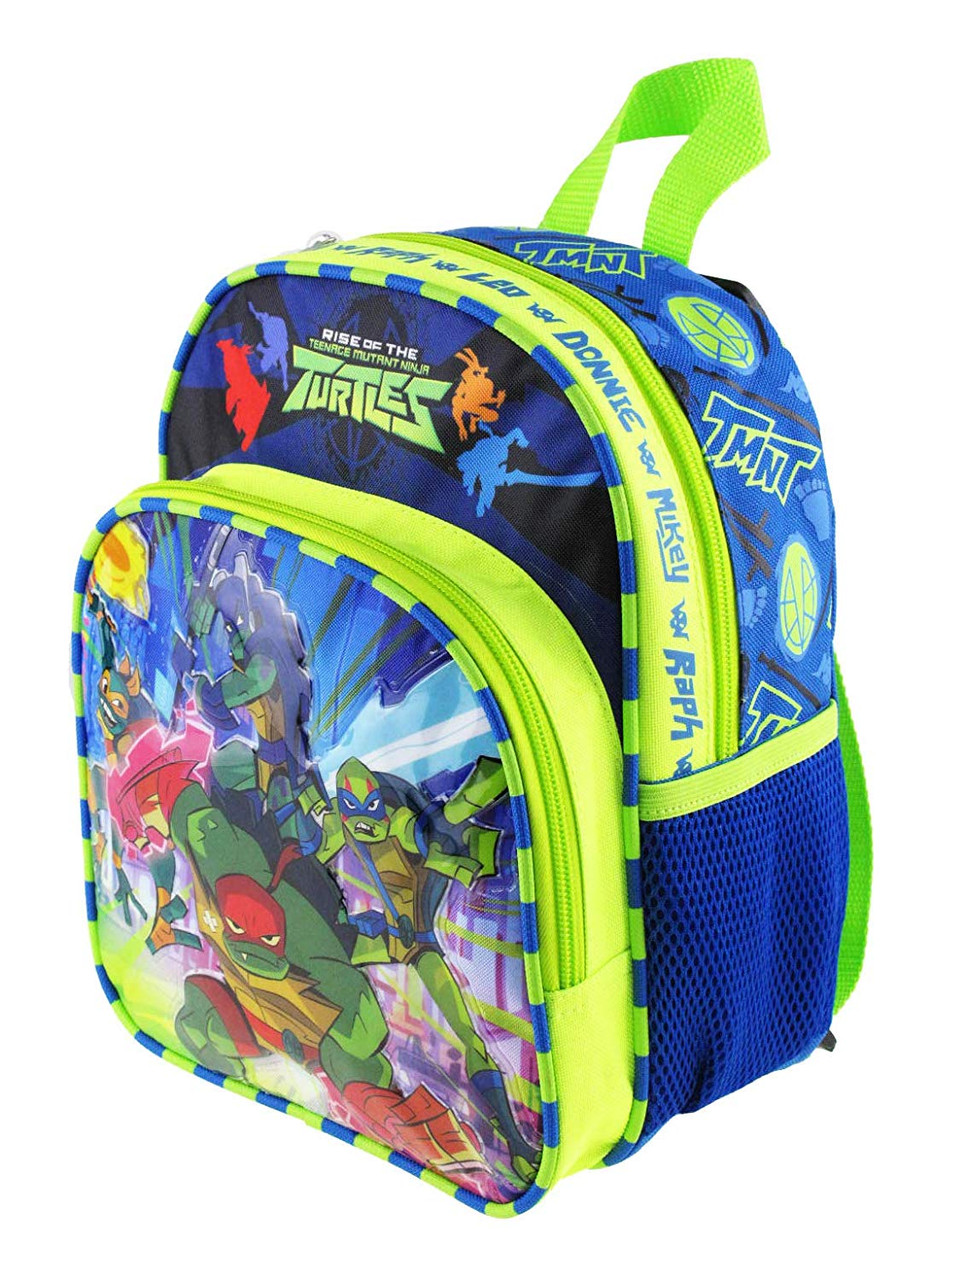 Rise of The TMNT 087789 Backpack Teenage Mutant Ninja Turtles